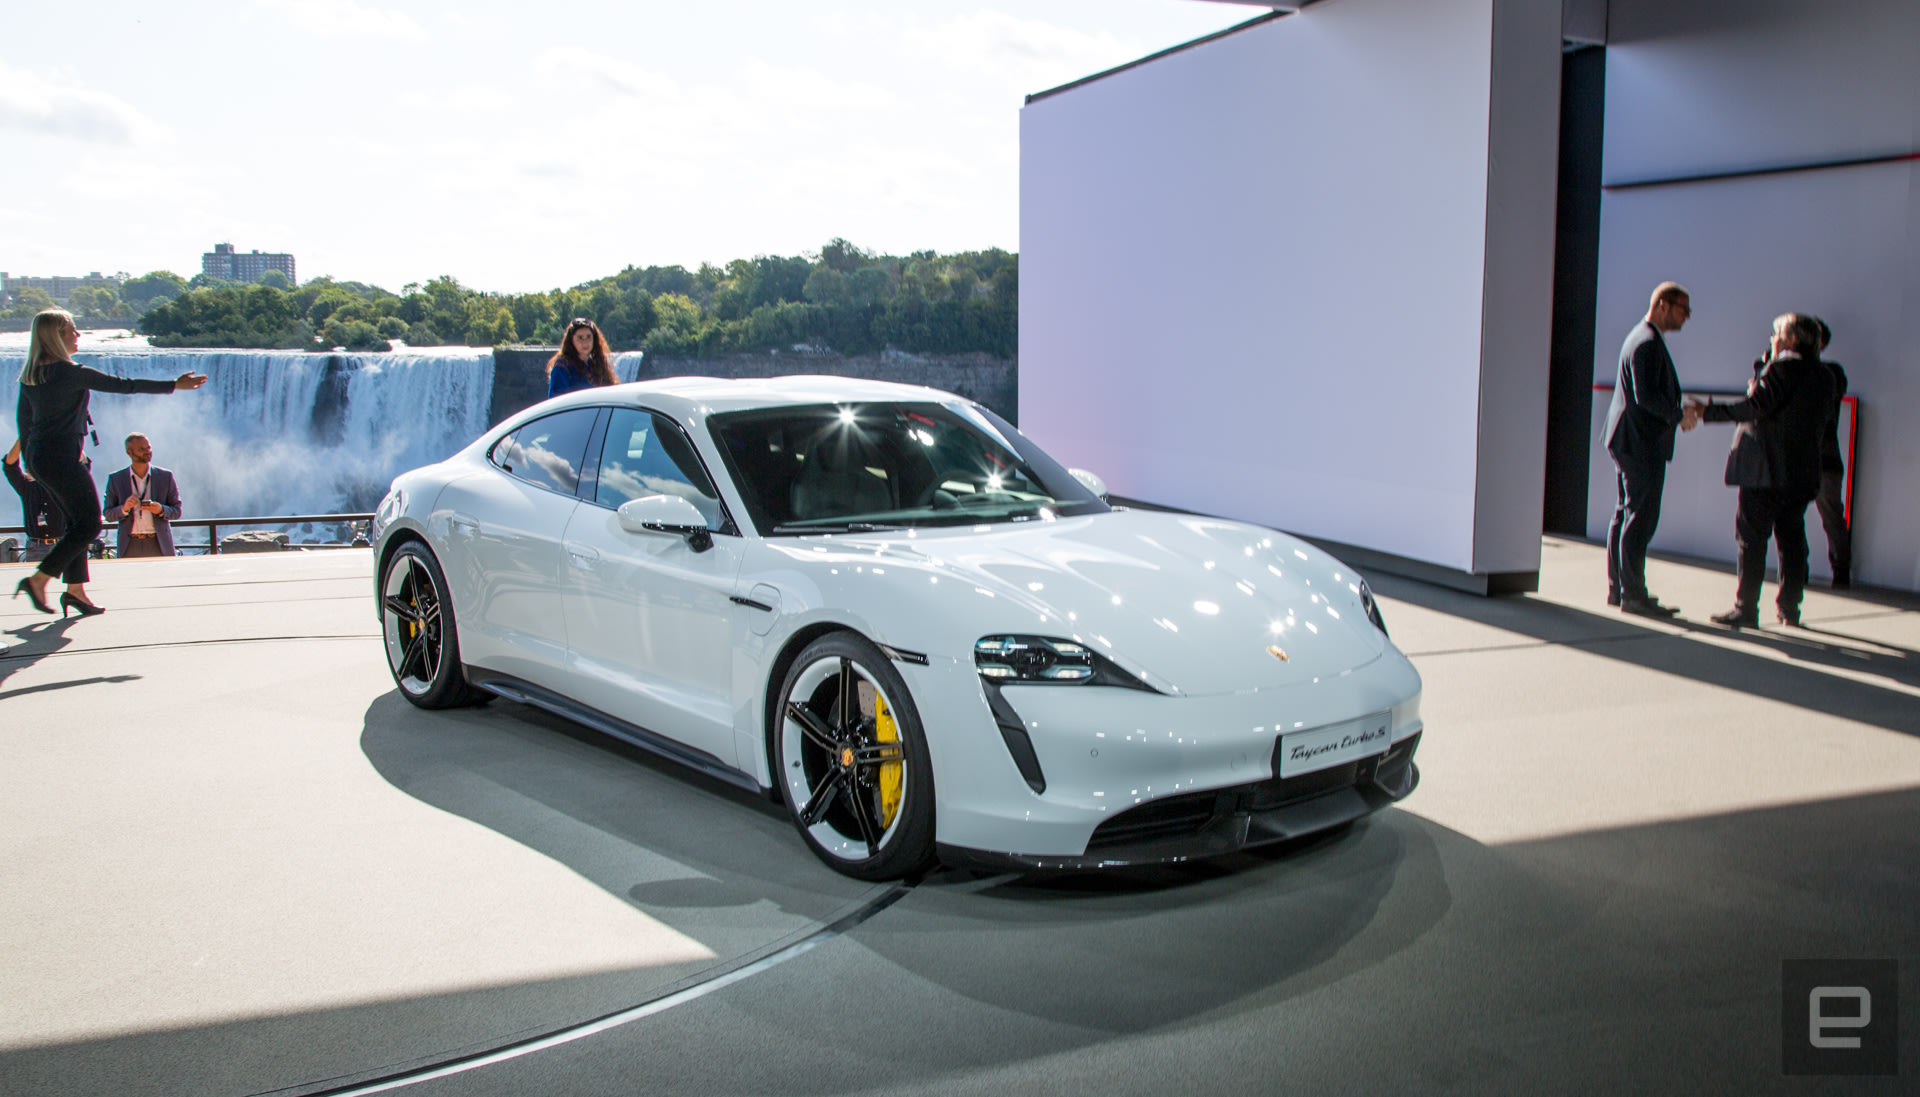 اتومبیل Porsche Taycan در چهار مدل عرضه خواهد شد